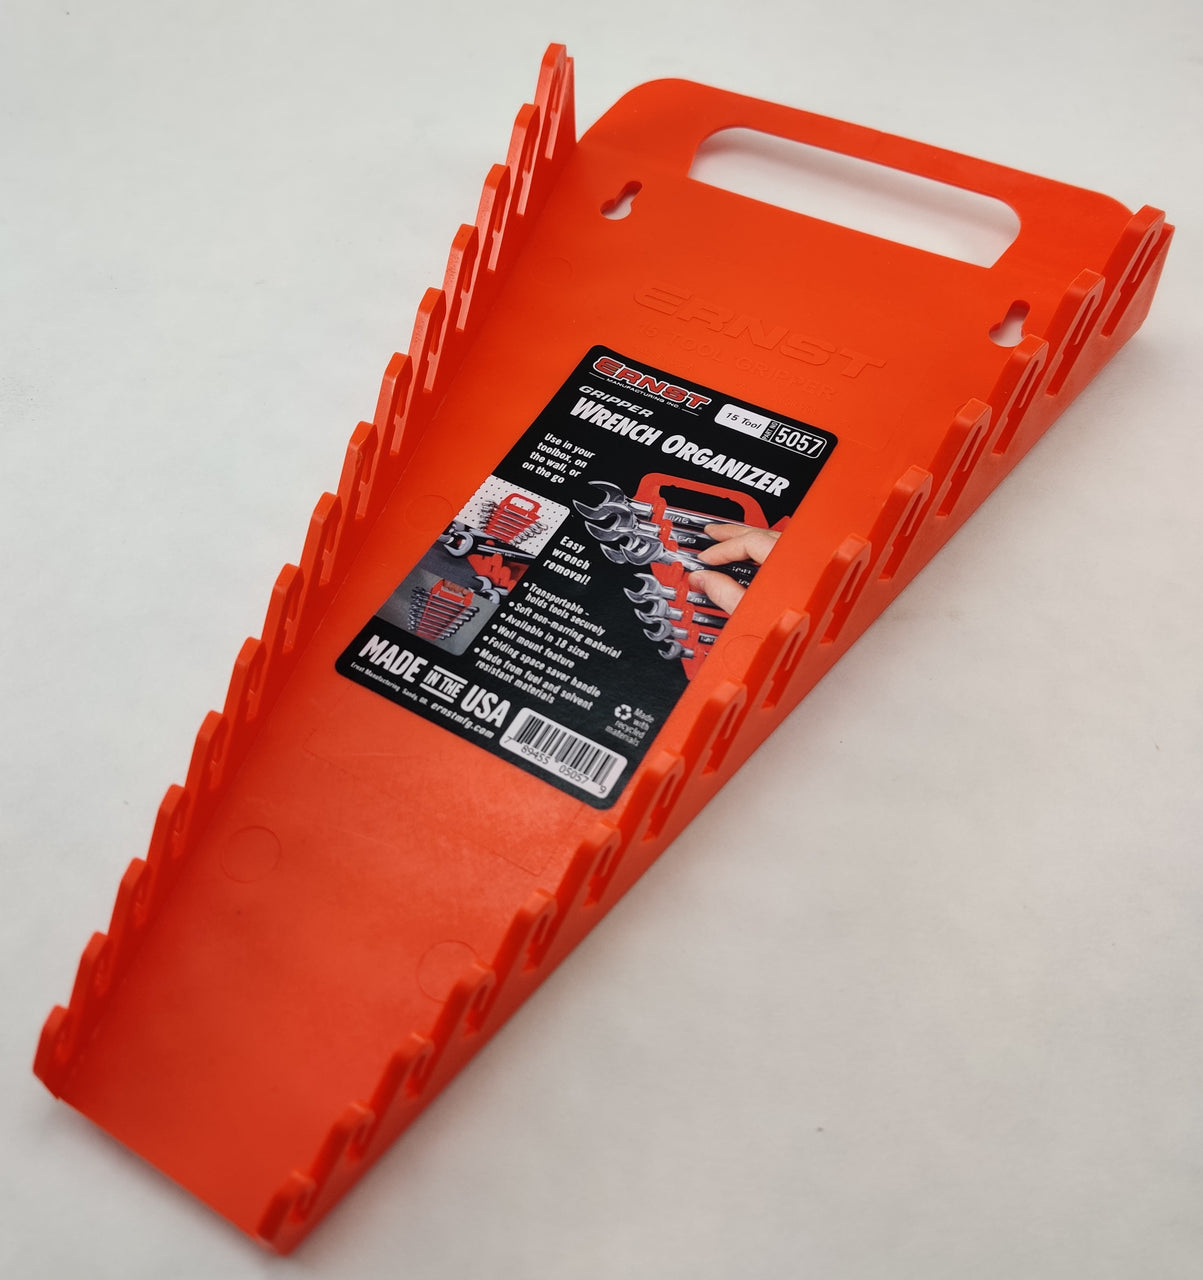 Ernst Manufacturing 5057 15 Tool Gripper Wrench Organizer, Orange